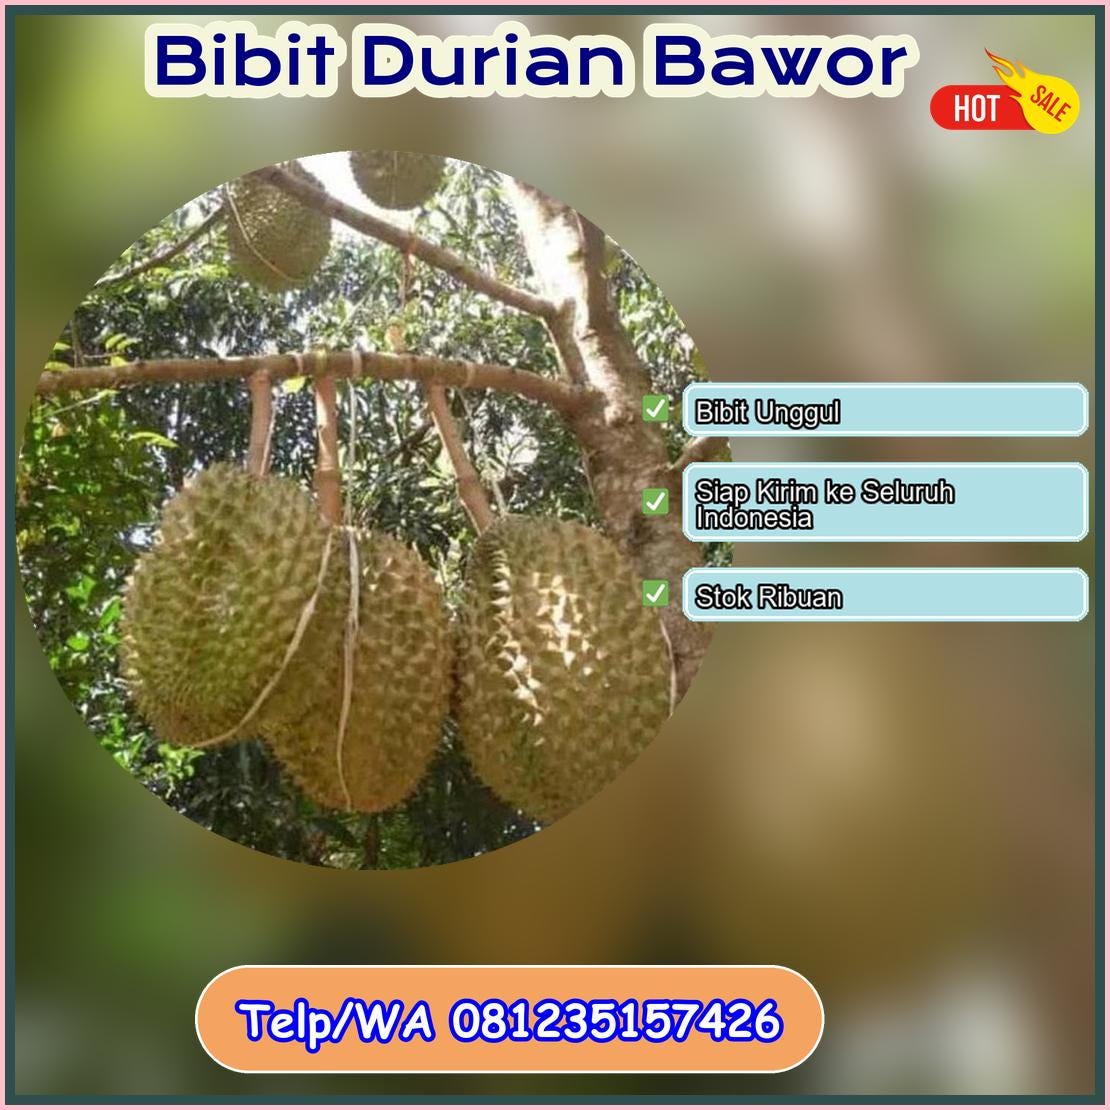 Harga Bibit Durian Bawor Tanjung Jabung Barat